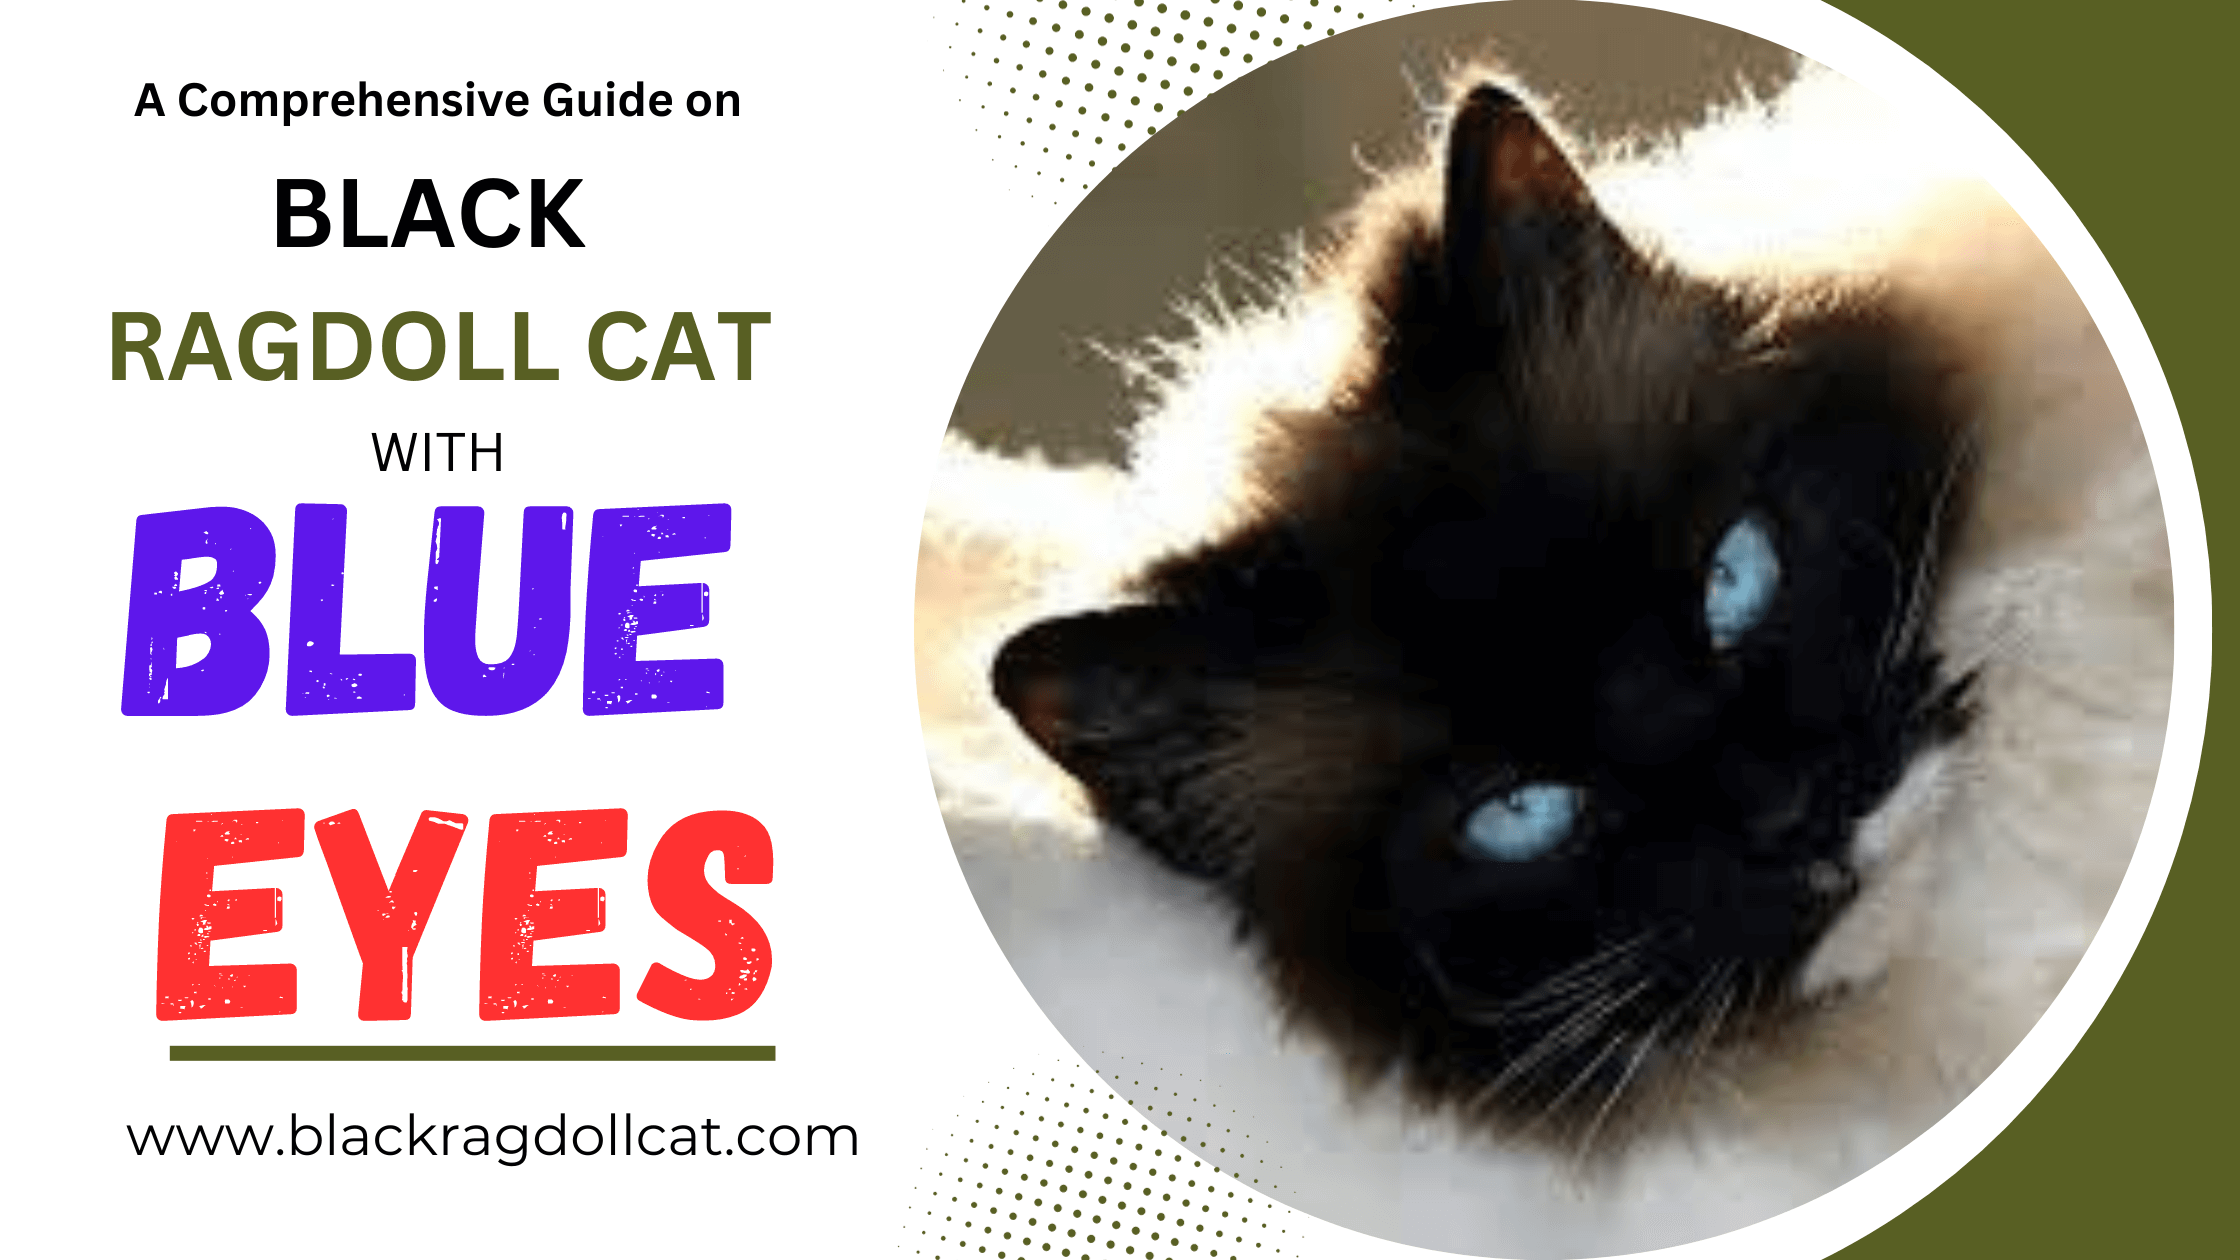 RAGDOLL CAT with blue eyes